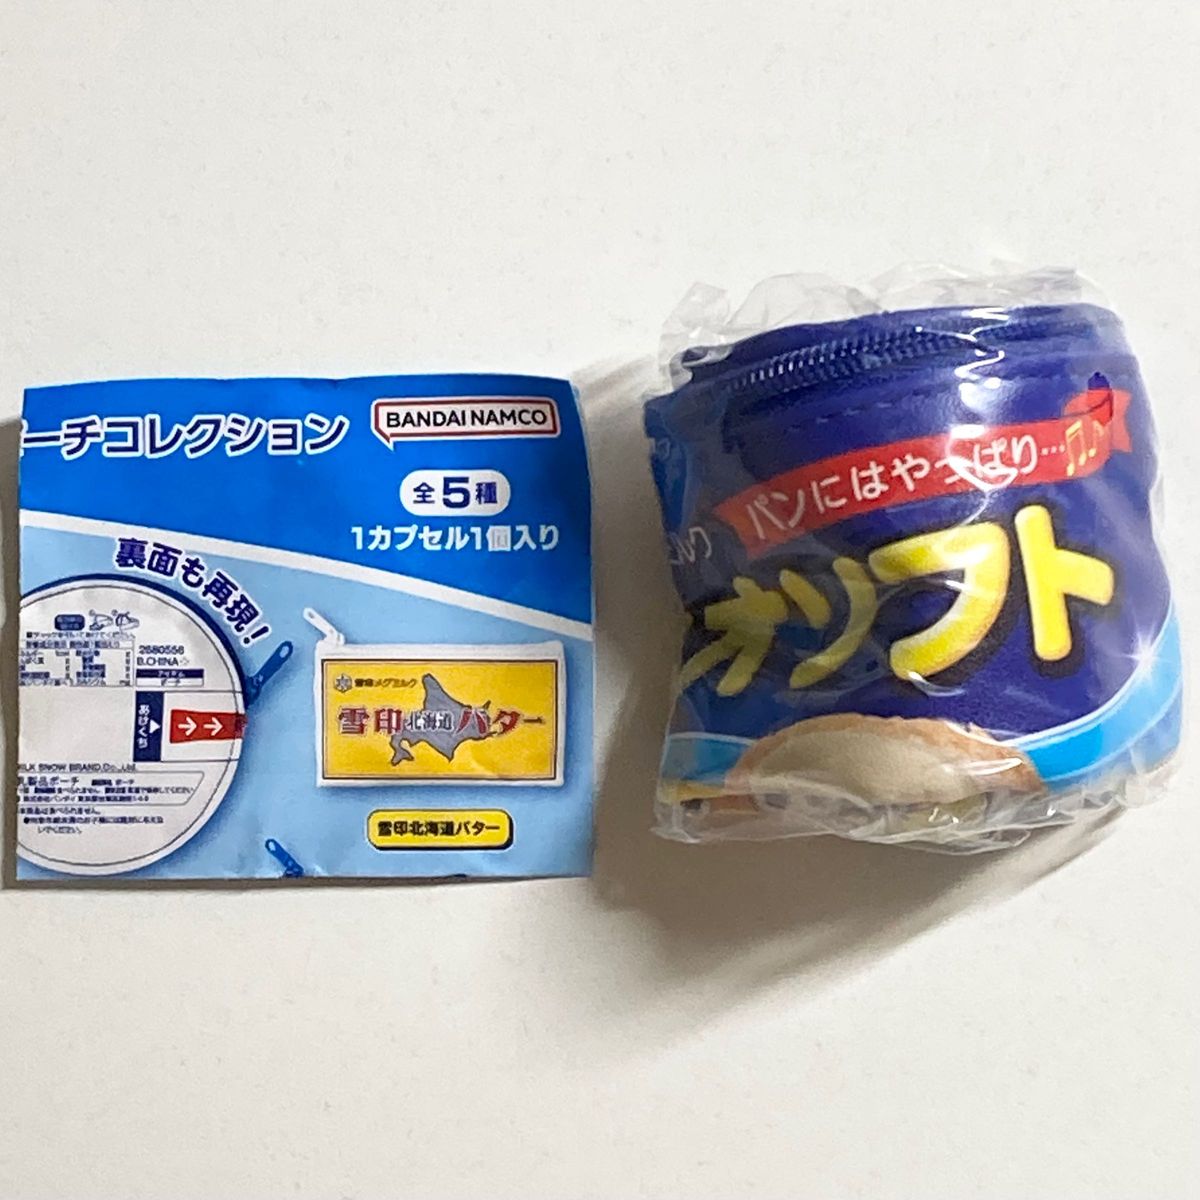 【未開封品・ガチャガチャ】雪印メグミルク 乳製品ポーチコレクション ネオソフト